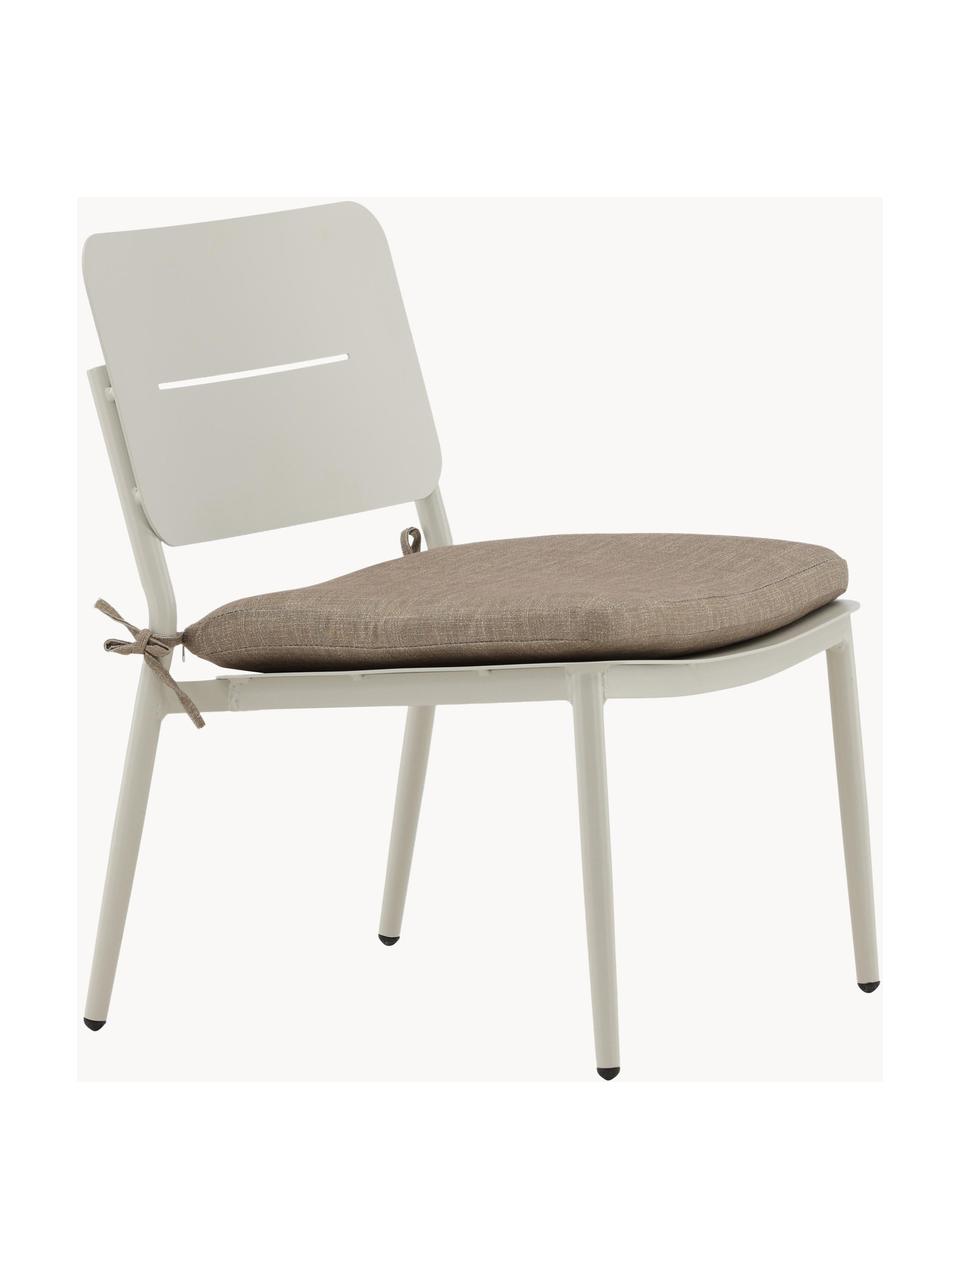 Fotel wypoczynkowy Lina, Tapicerka: 100% poliester, Stelaż: metal lakierowany, Greige tkanina, jasny beżowy, S 55 x W 74 cm